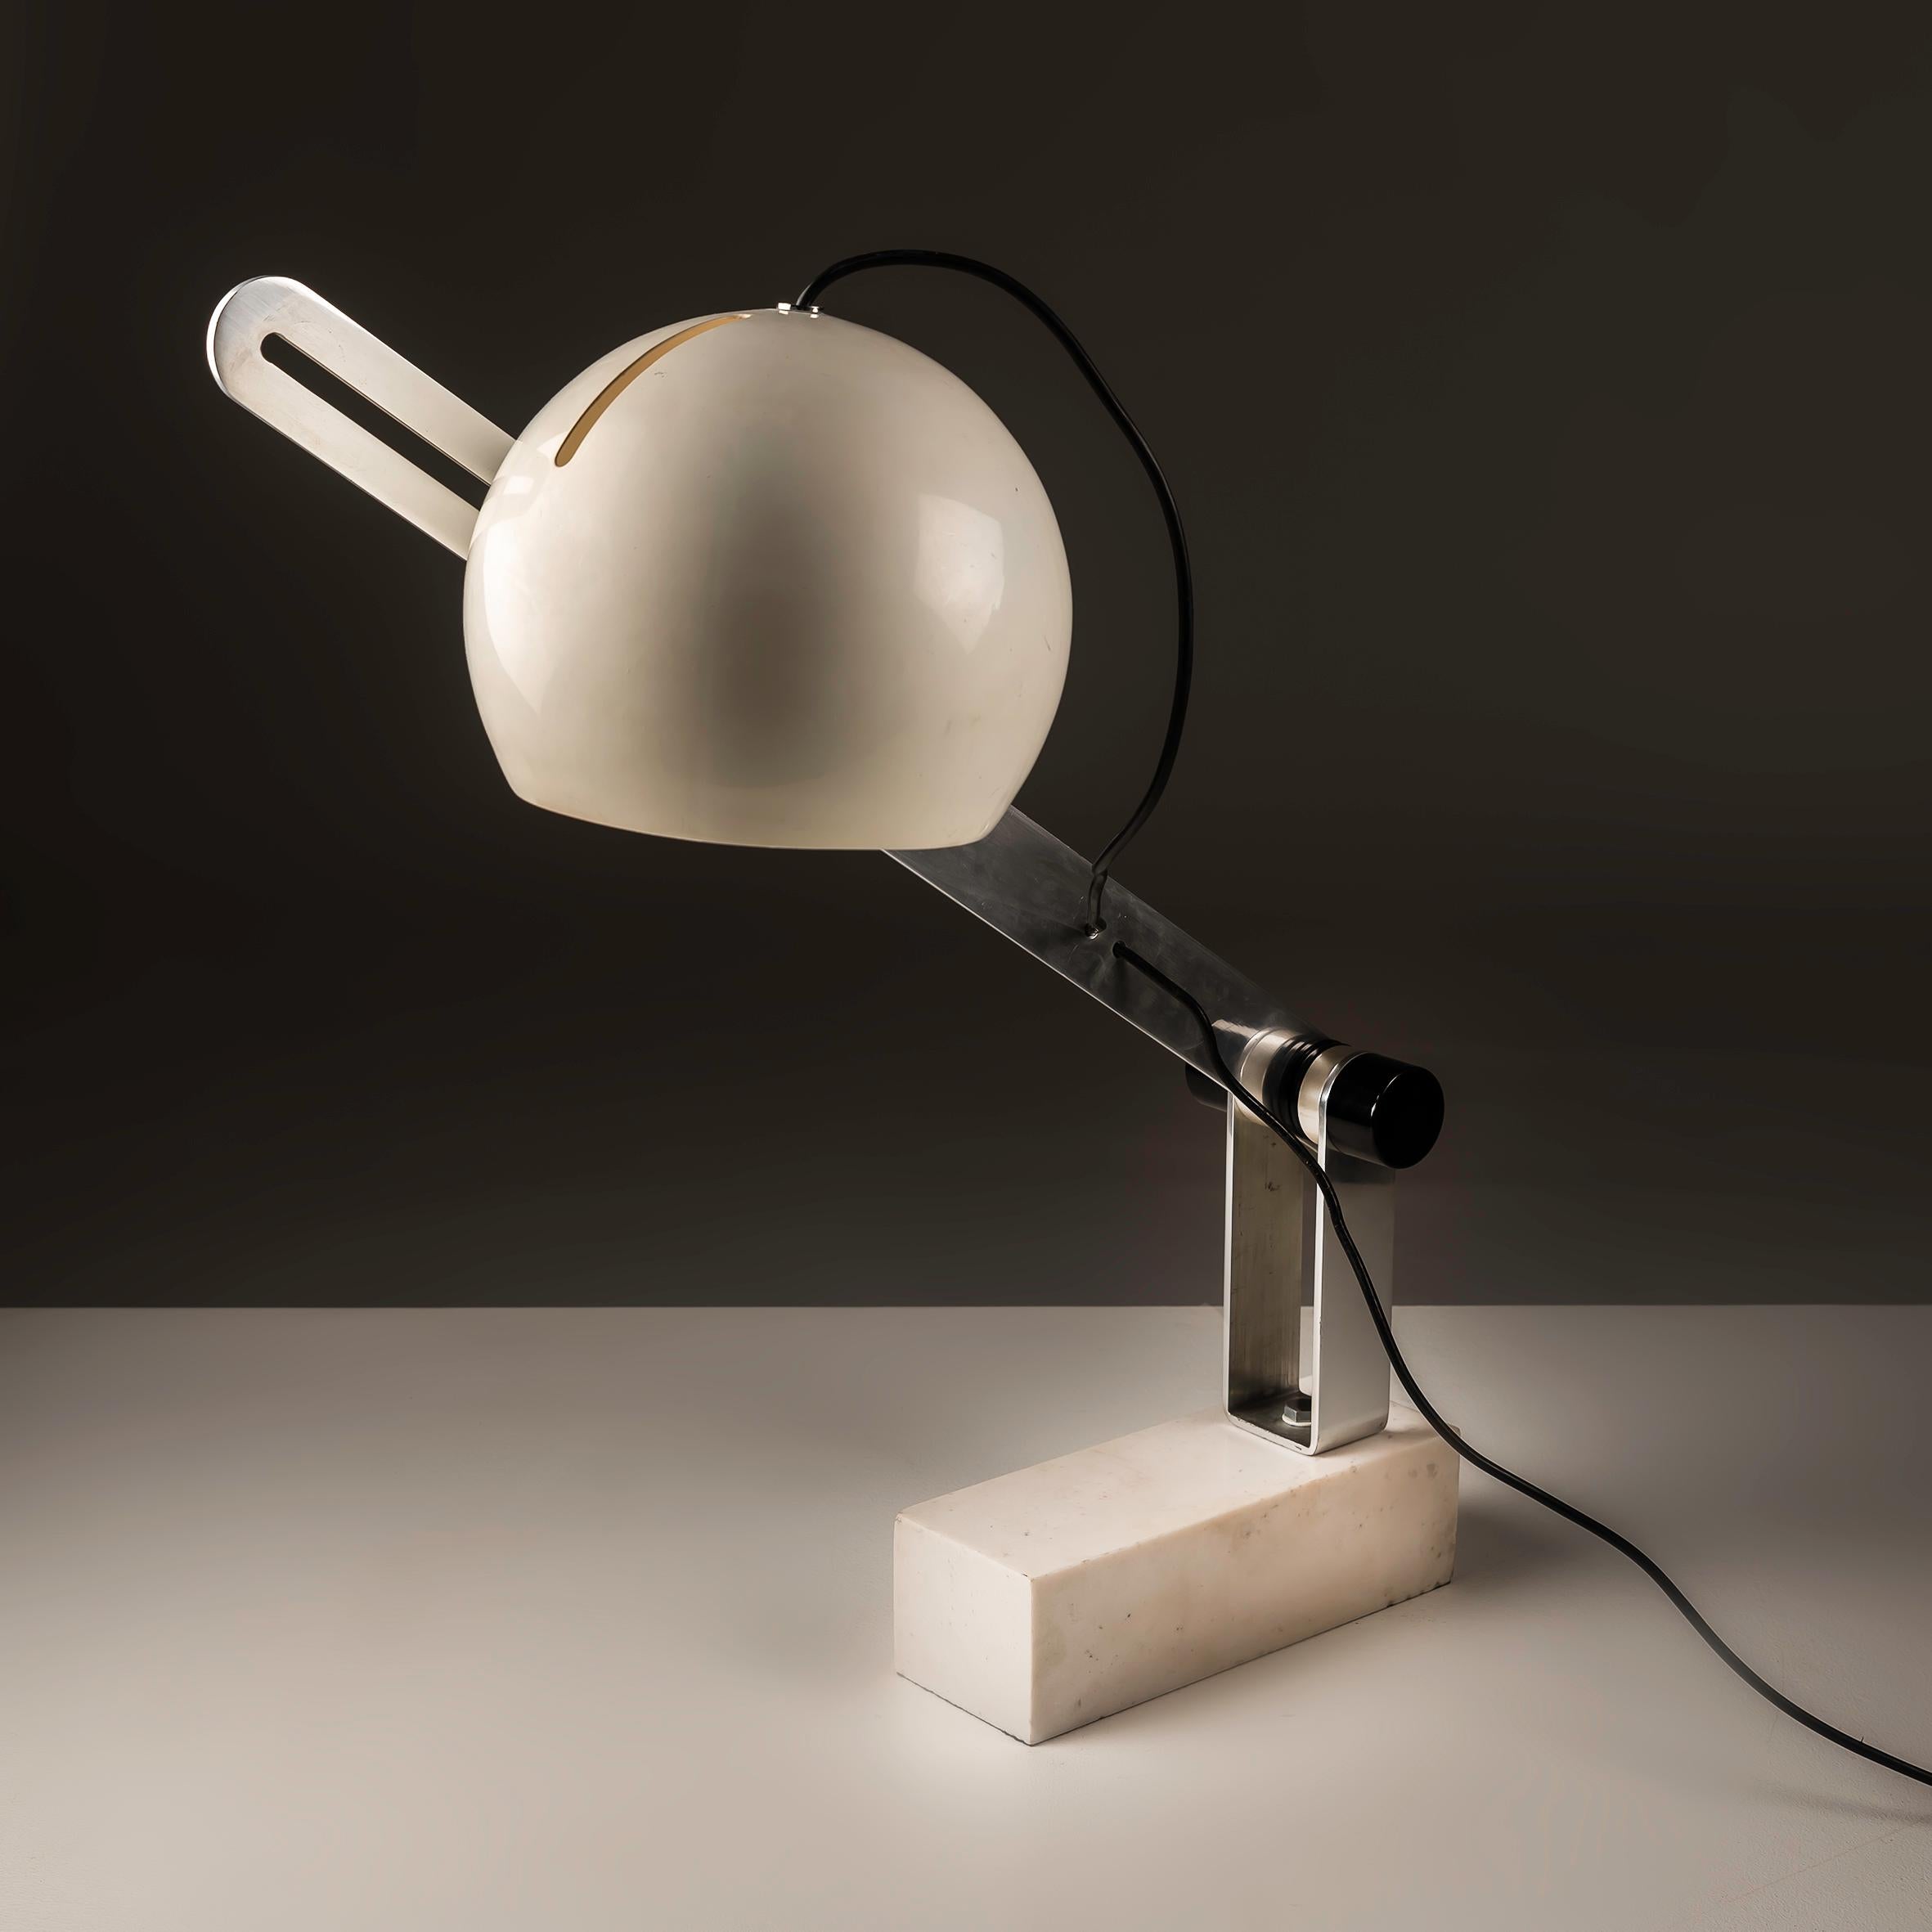 
Cette lampe italienne rare, rappelant le style de Joe Colombo et datant des années 1960, incarne l'esprit novateur du design de l'âge de l'espace. Son socle en marbre de Carrare apporte non seulement une touche de luxe mais ancre également la lampe